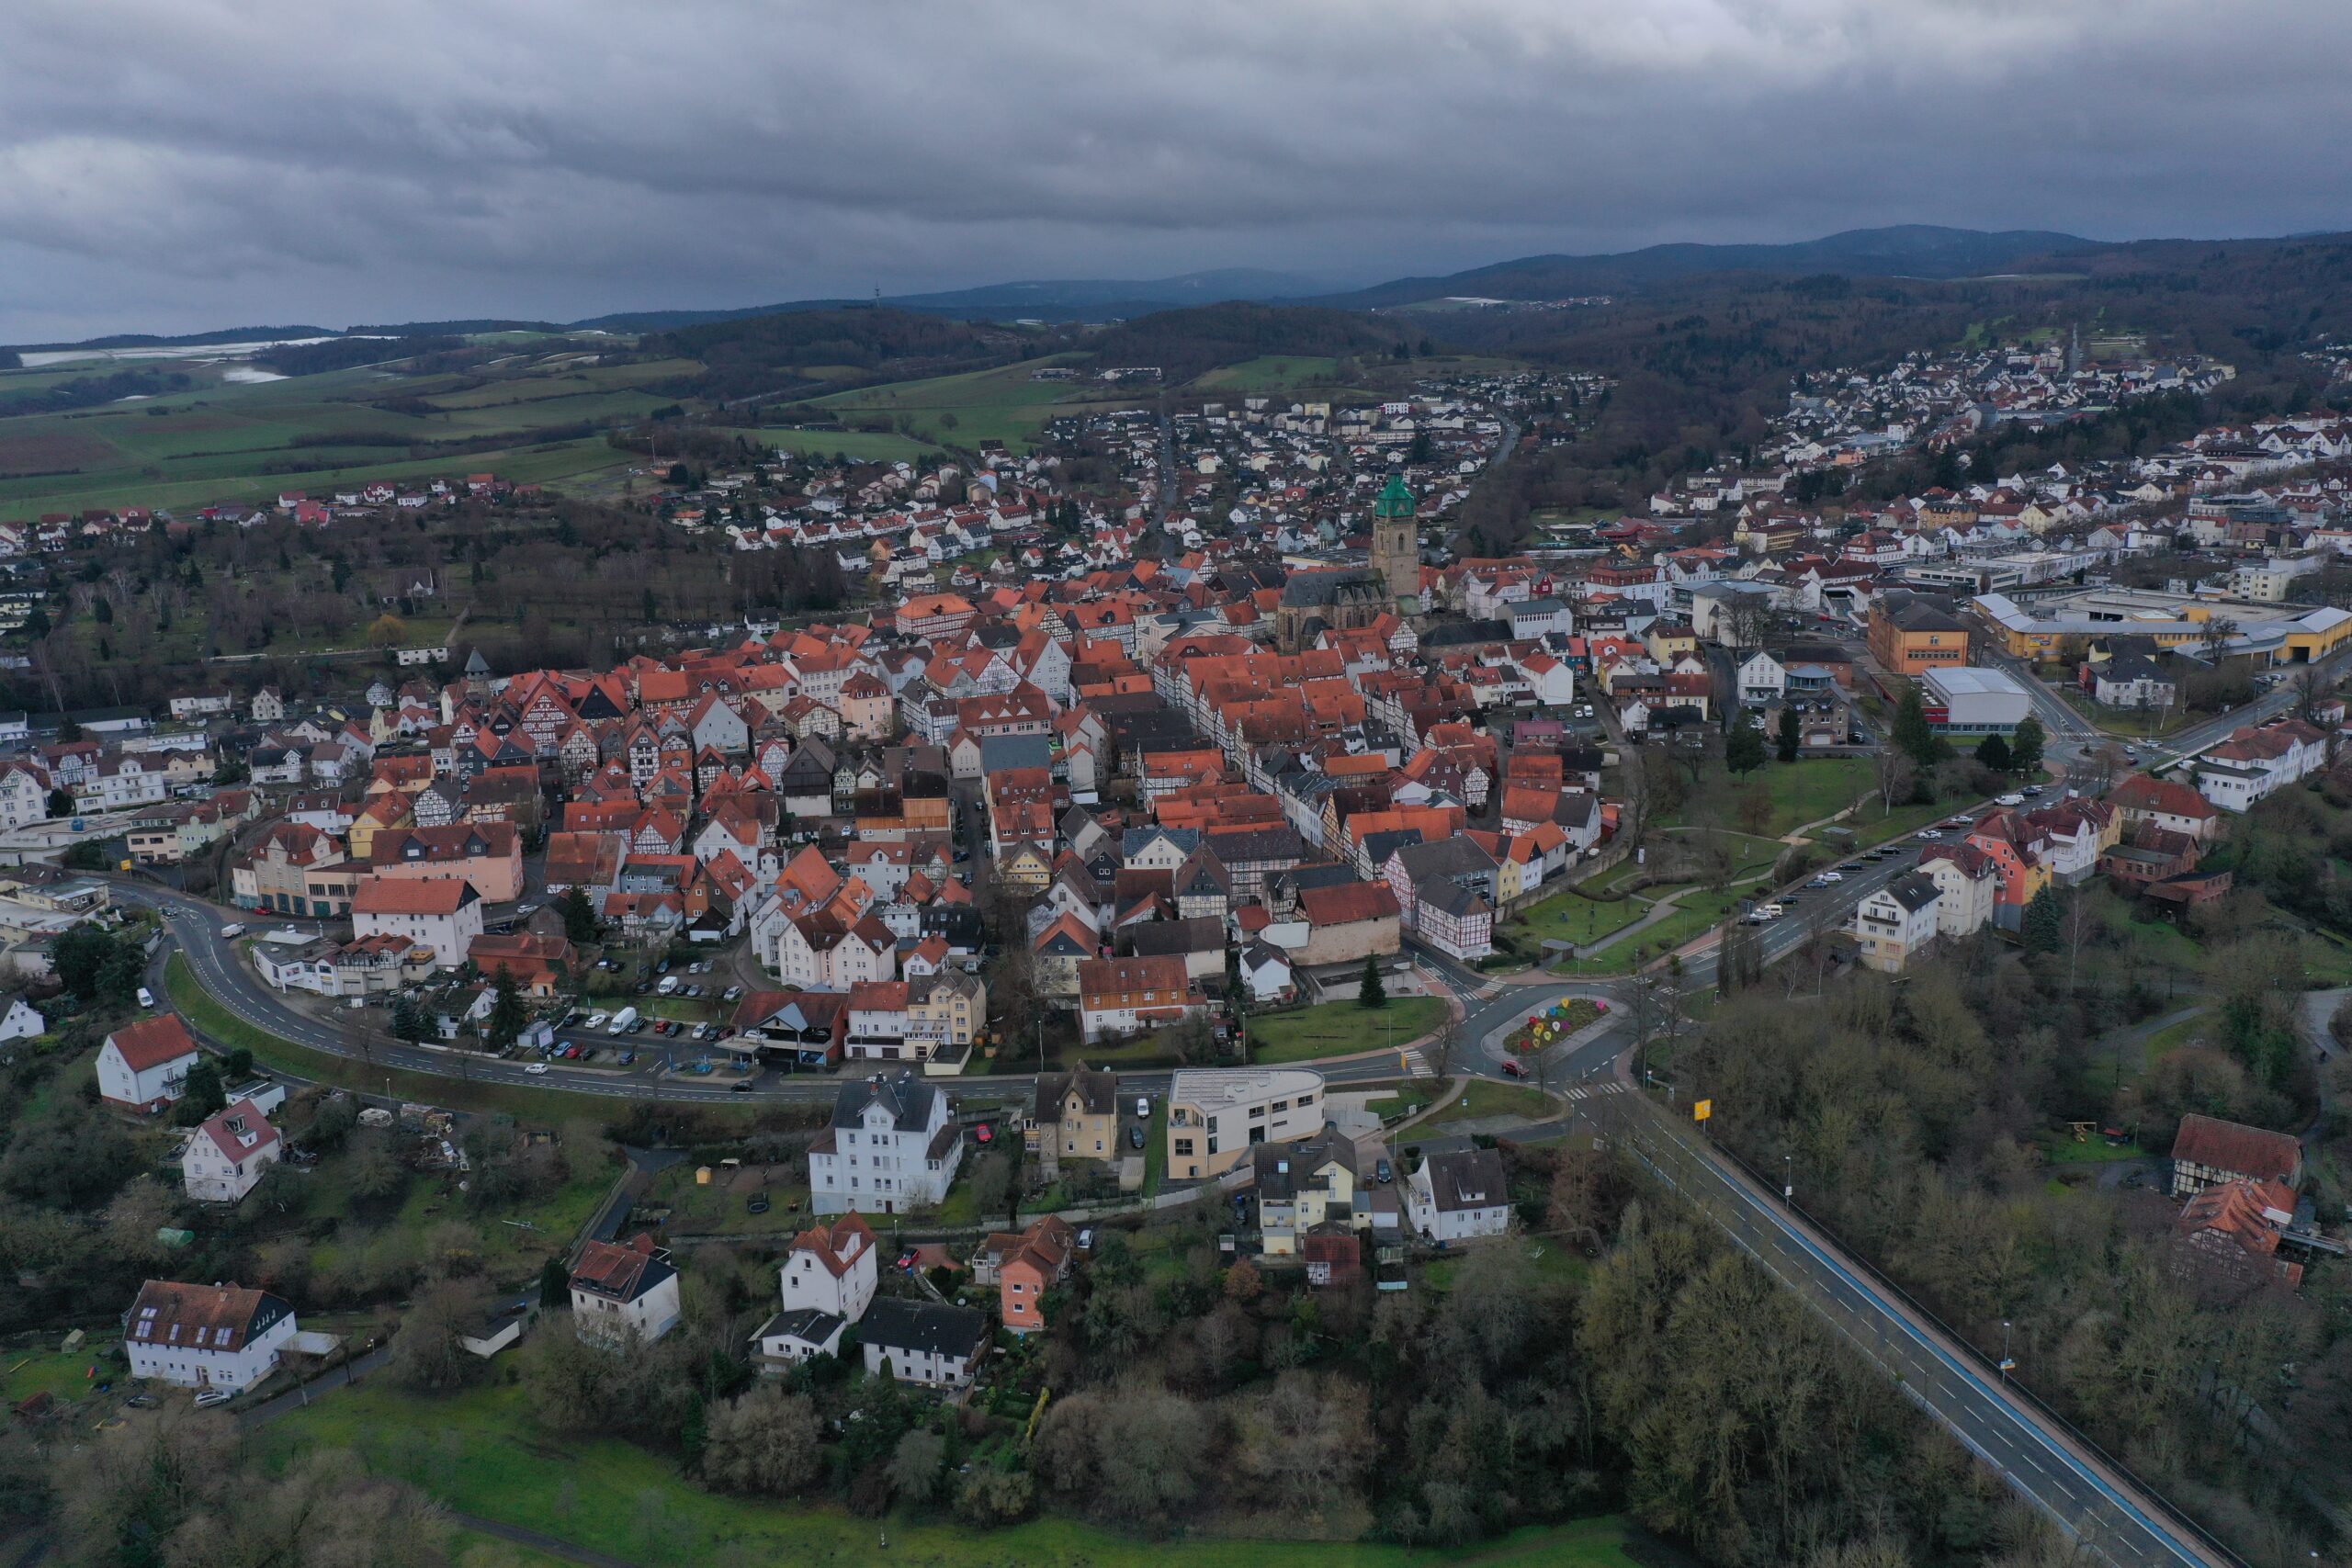 Herzlich Willkommen in der Kurstadt Bad Wildungen/Welcome to the spa town of Bad Wildungen